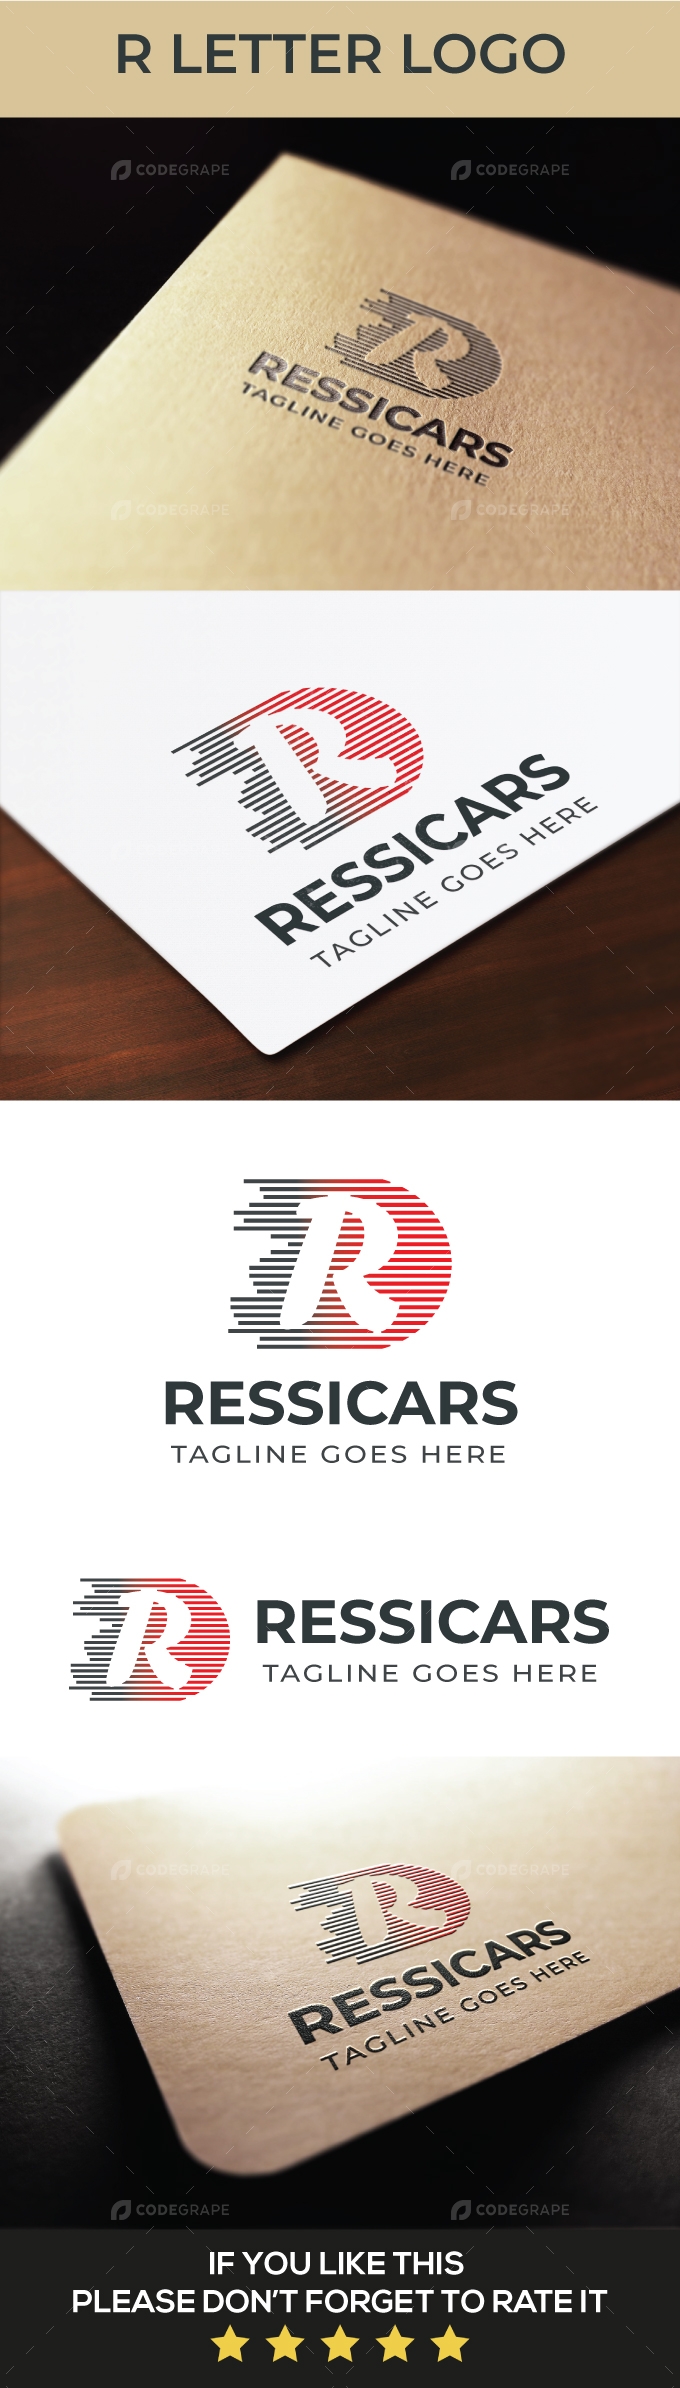 R Letter Logo Template